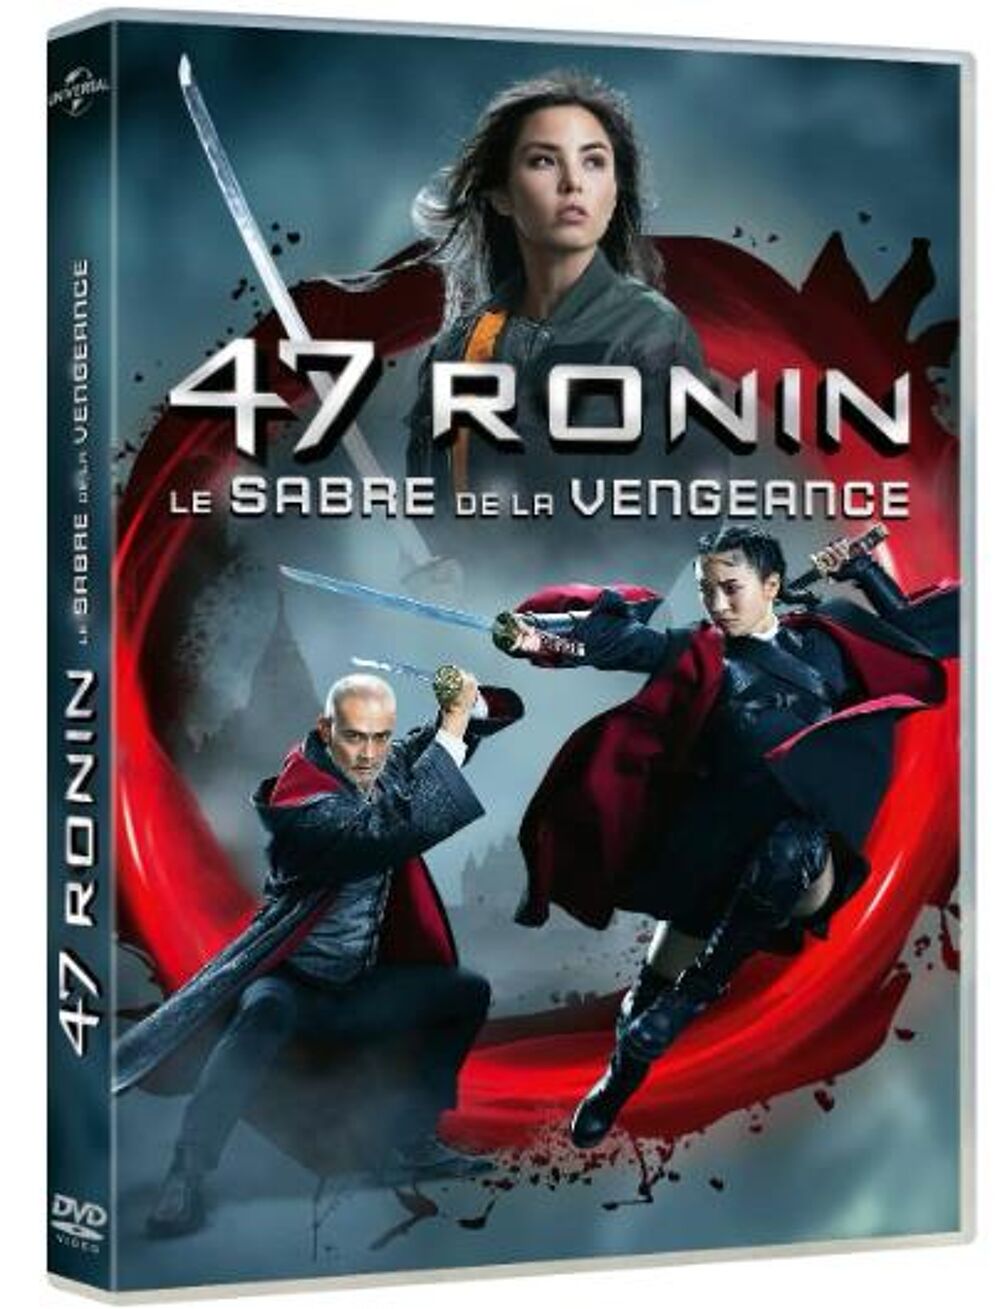 DVD 47 RONIN &quot;LE SABRE DE LA VENGEANCE&quot; DVD et blu-ray